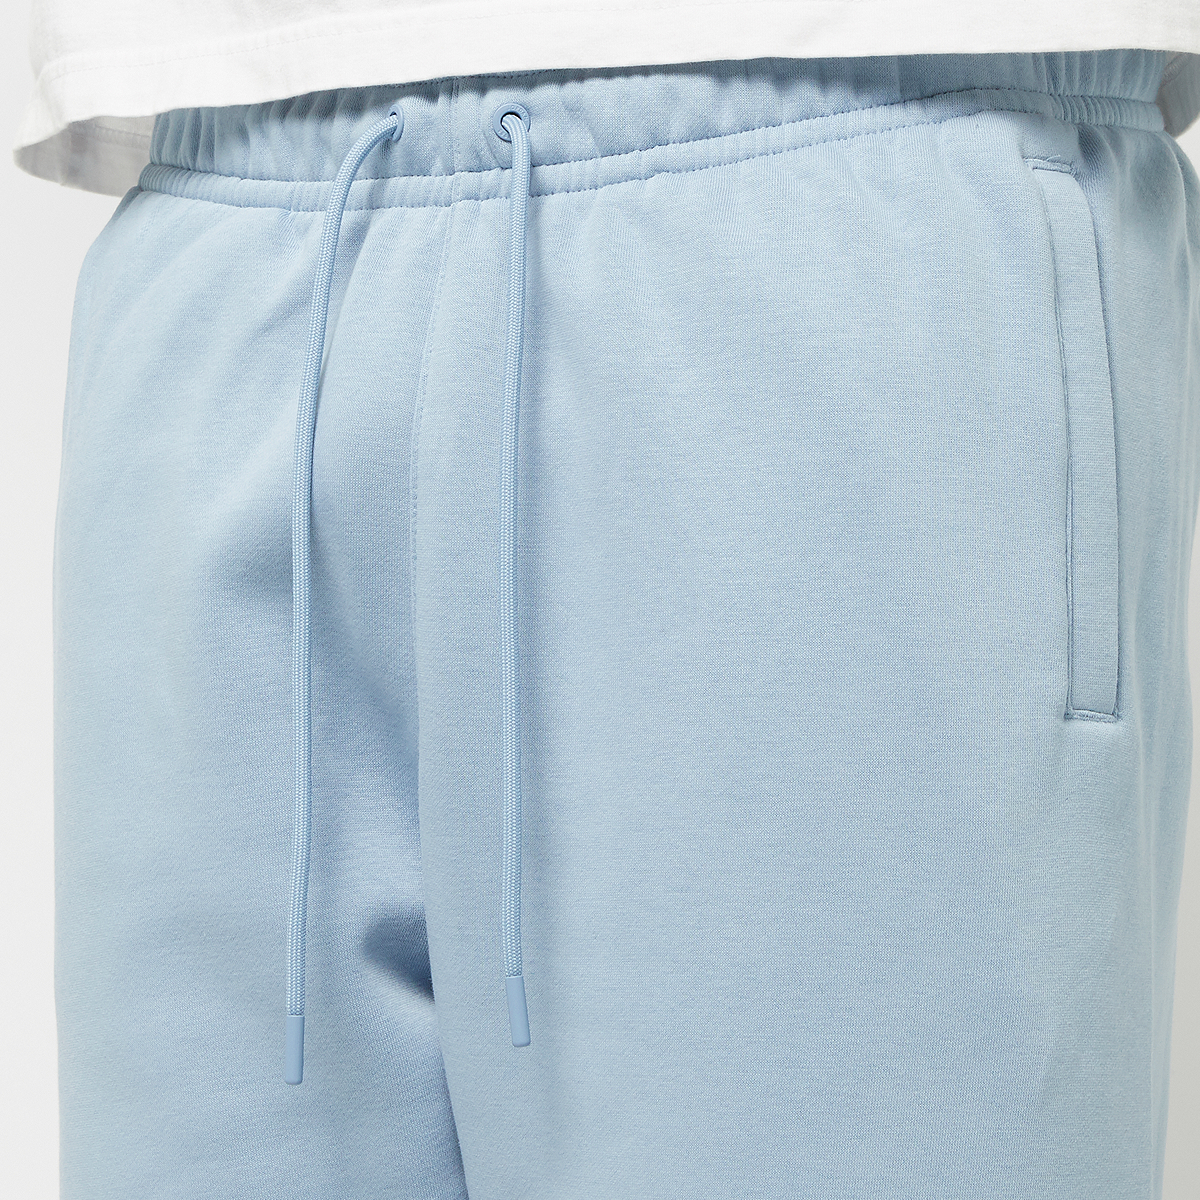 Jordan Essentials Fleece Baseline Pants Trainingsbroeken Heren blue grey industrial blue maat: S beschikbare maaten:S M L XL